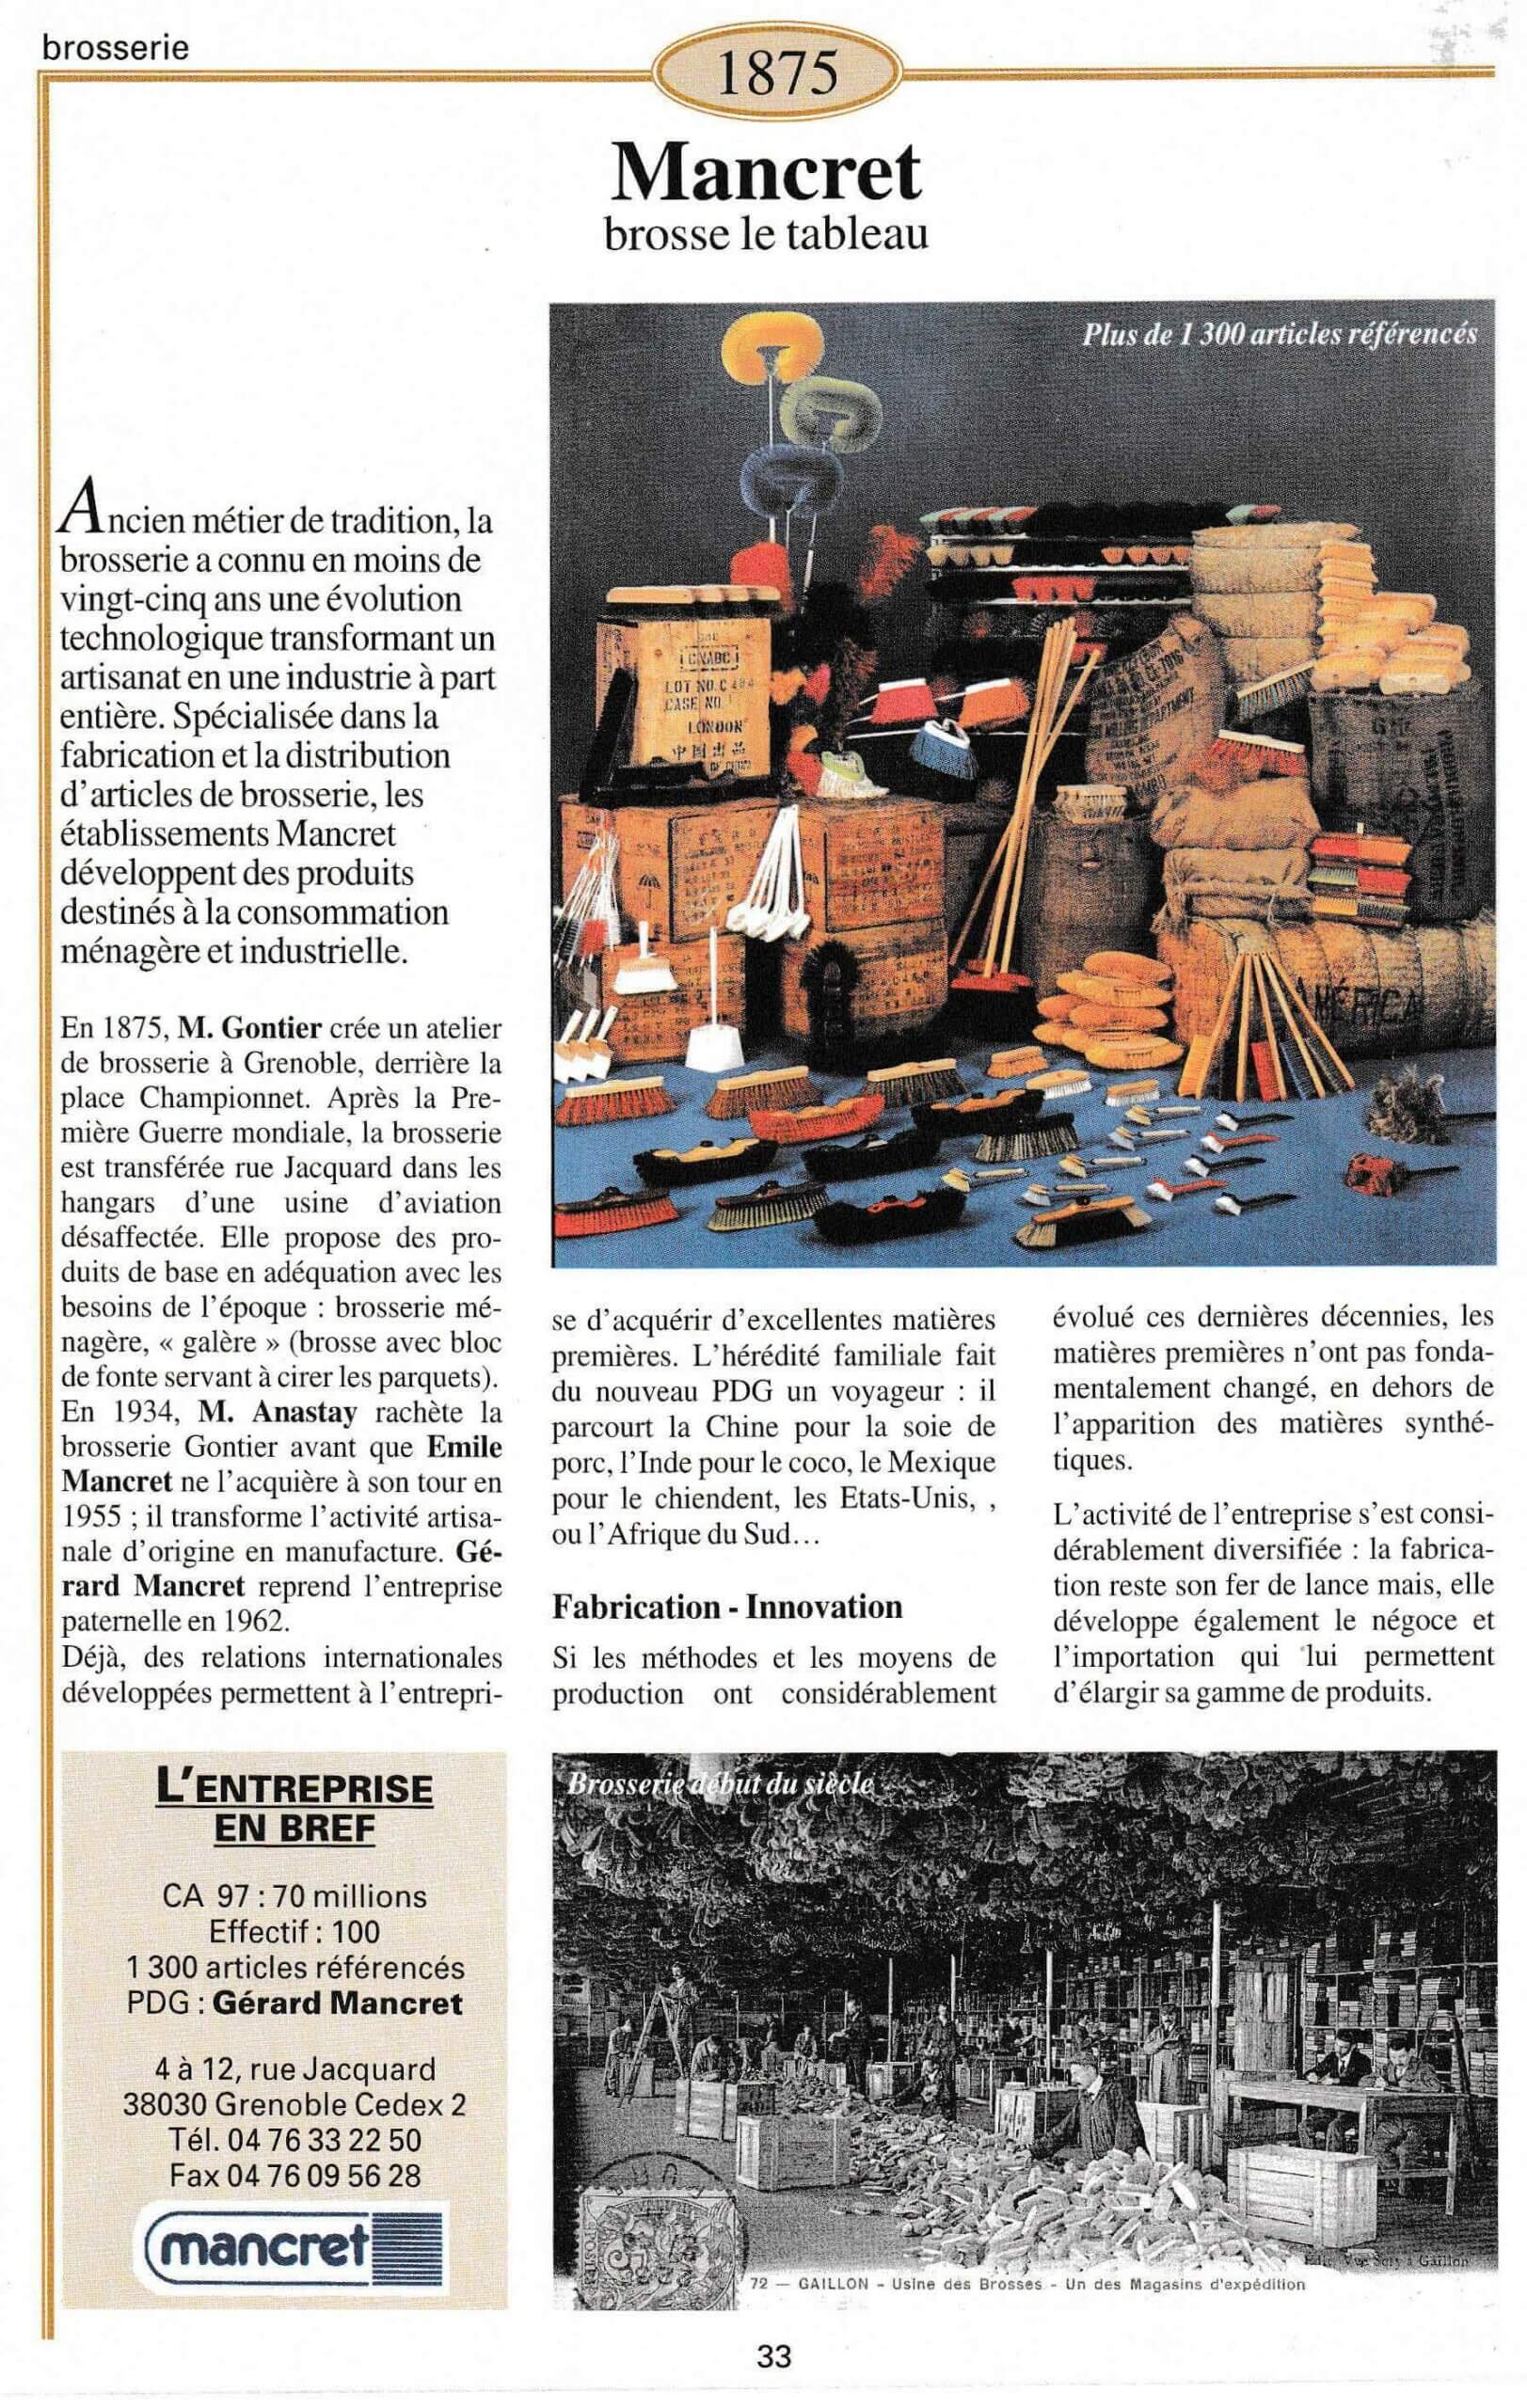 Mancret - fiche du supplément "Entreprises centenaires en Isère", publié par Les affiches de Grenoble et du Dauphiné, juin 1998.